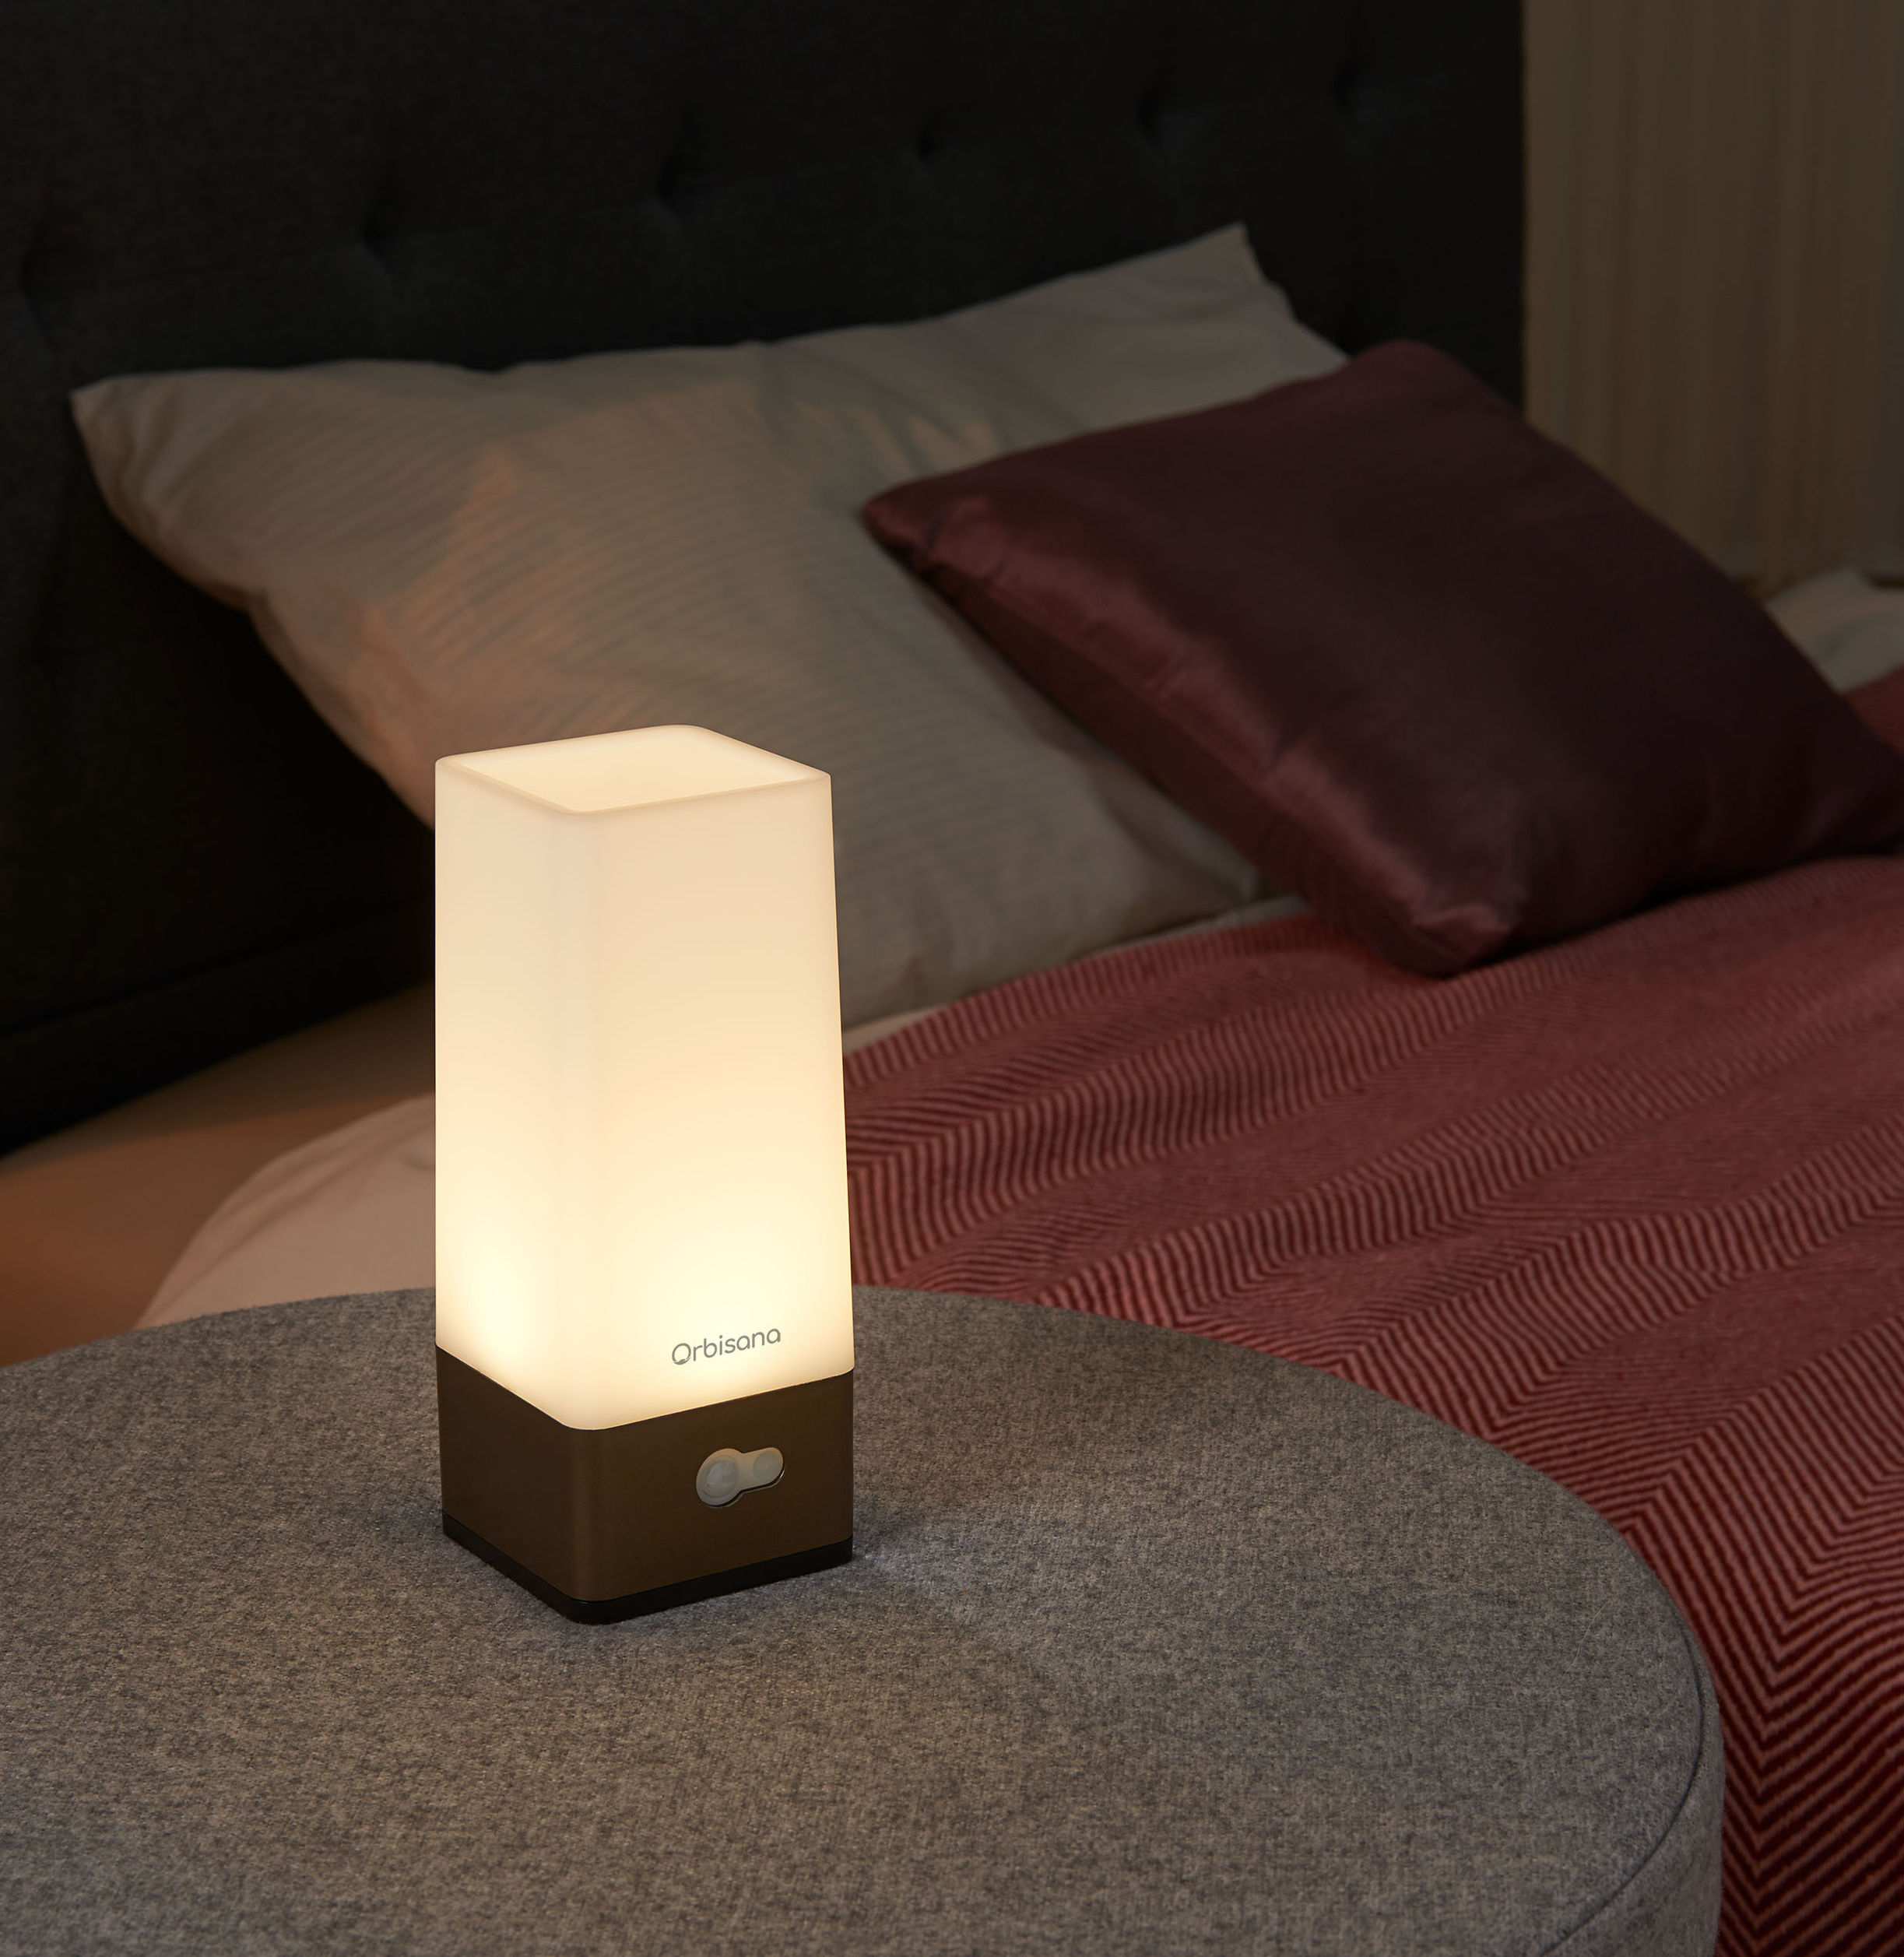 Orbisana LED Nachtlicht mit Bewegungssensor online kaufen - Orbisana